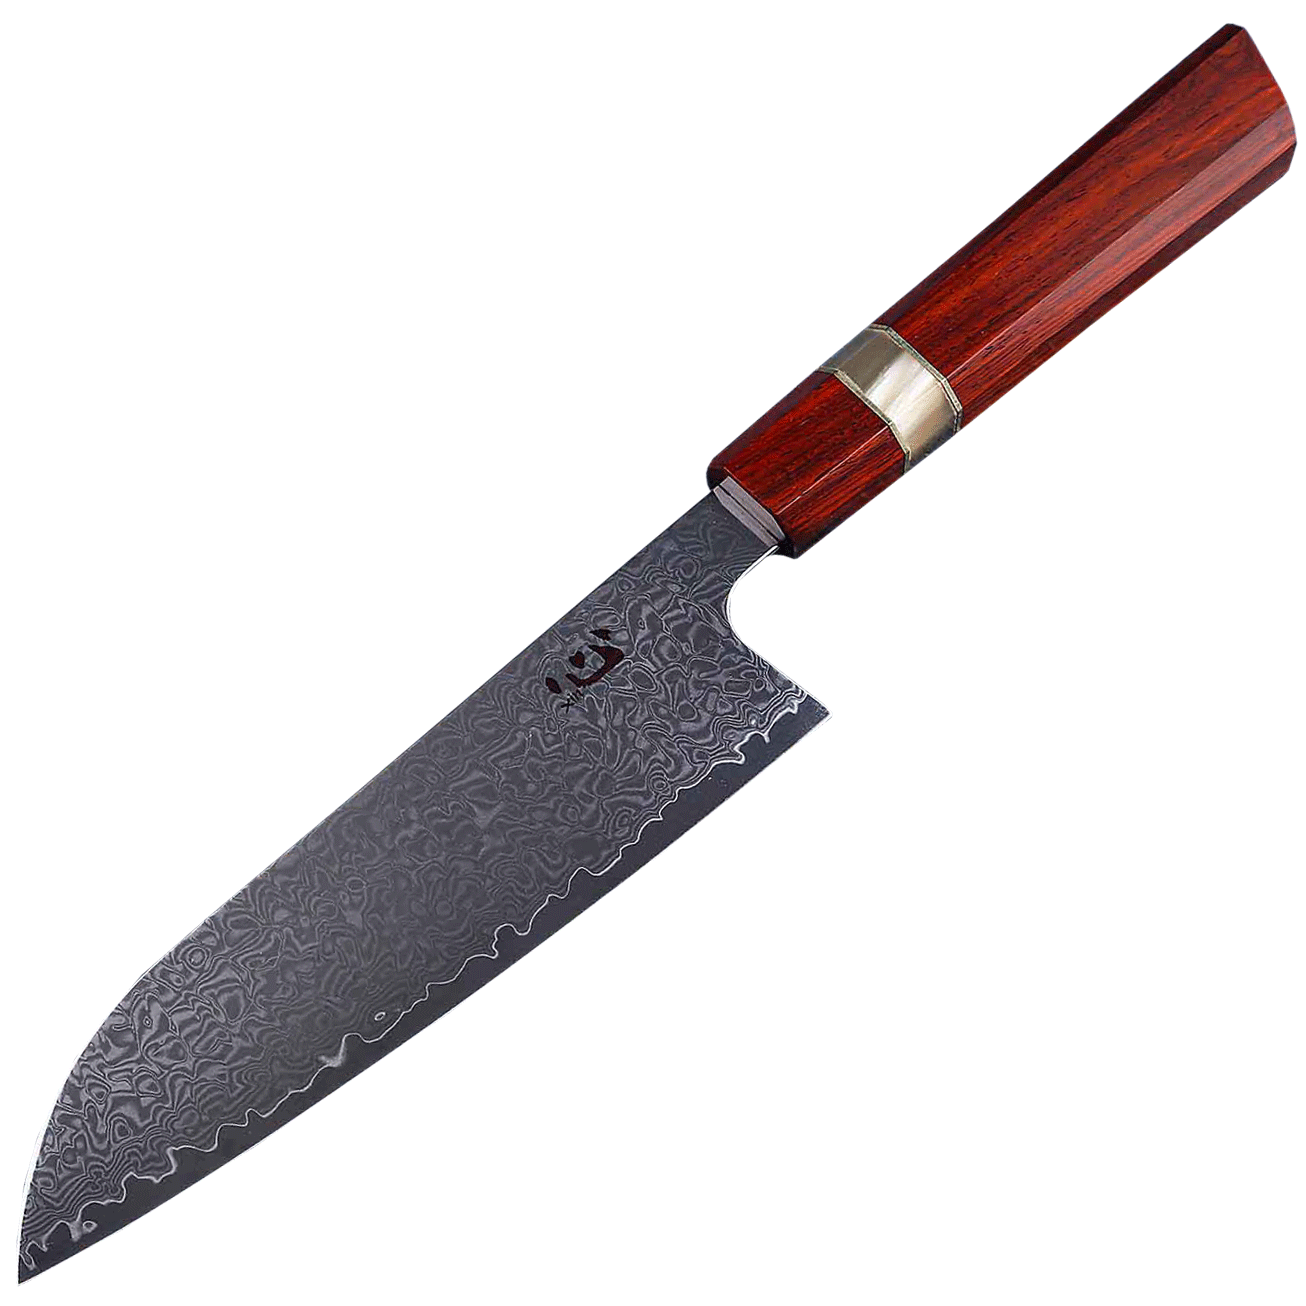 Нож кухонный Xin Cutlery Santoku XC122 193мм, сталь VG-10, рукоять дерево палисандр - фото 1